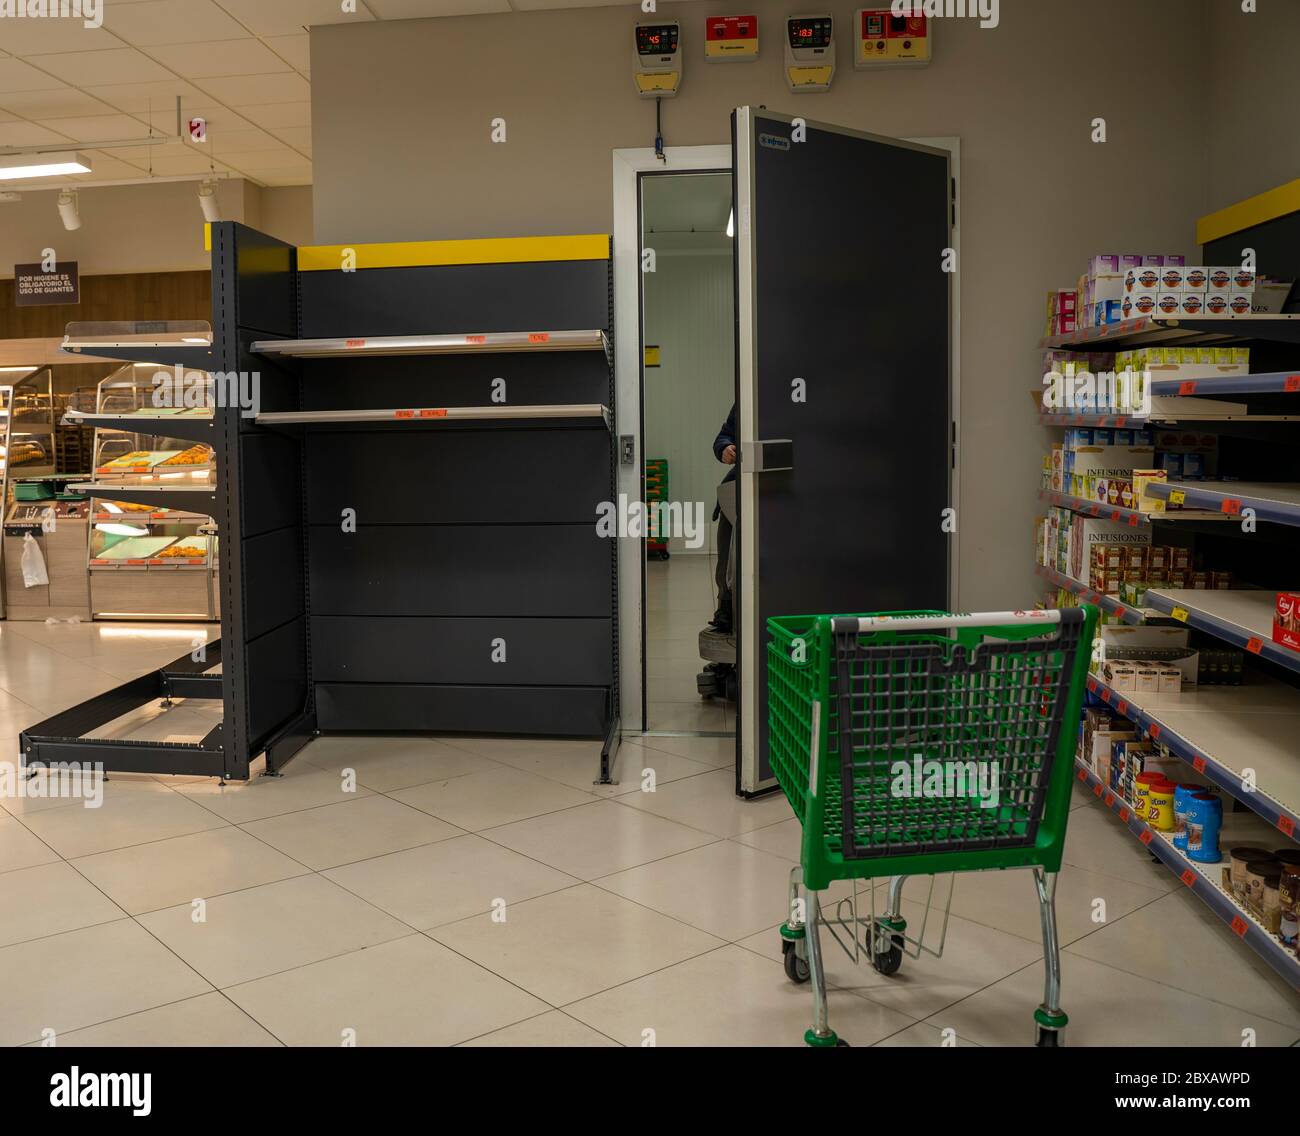 Vider les étagères en raison de l'achat panique causé par la crise du coronavirus. Pénurie de nourriture et de fournitures de base au supermarché. Malaga, Espagne - 12 mars 2020 Banque D'Images